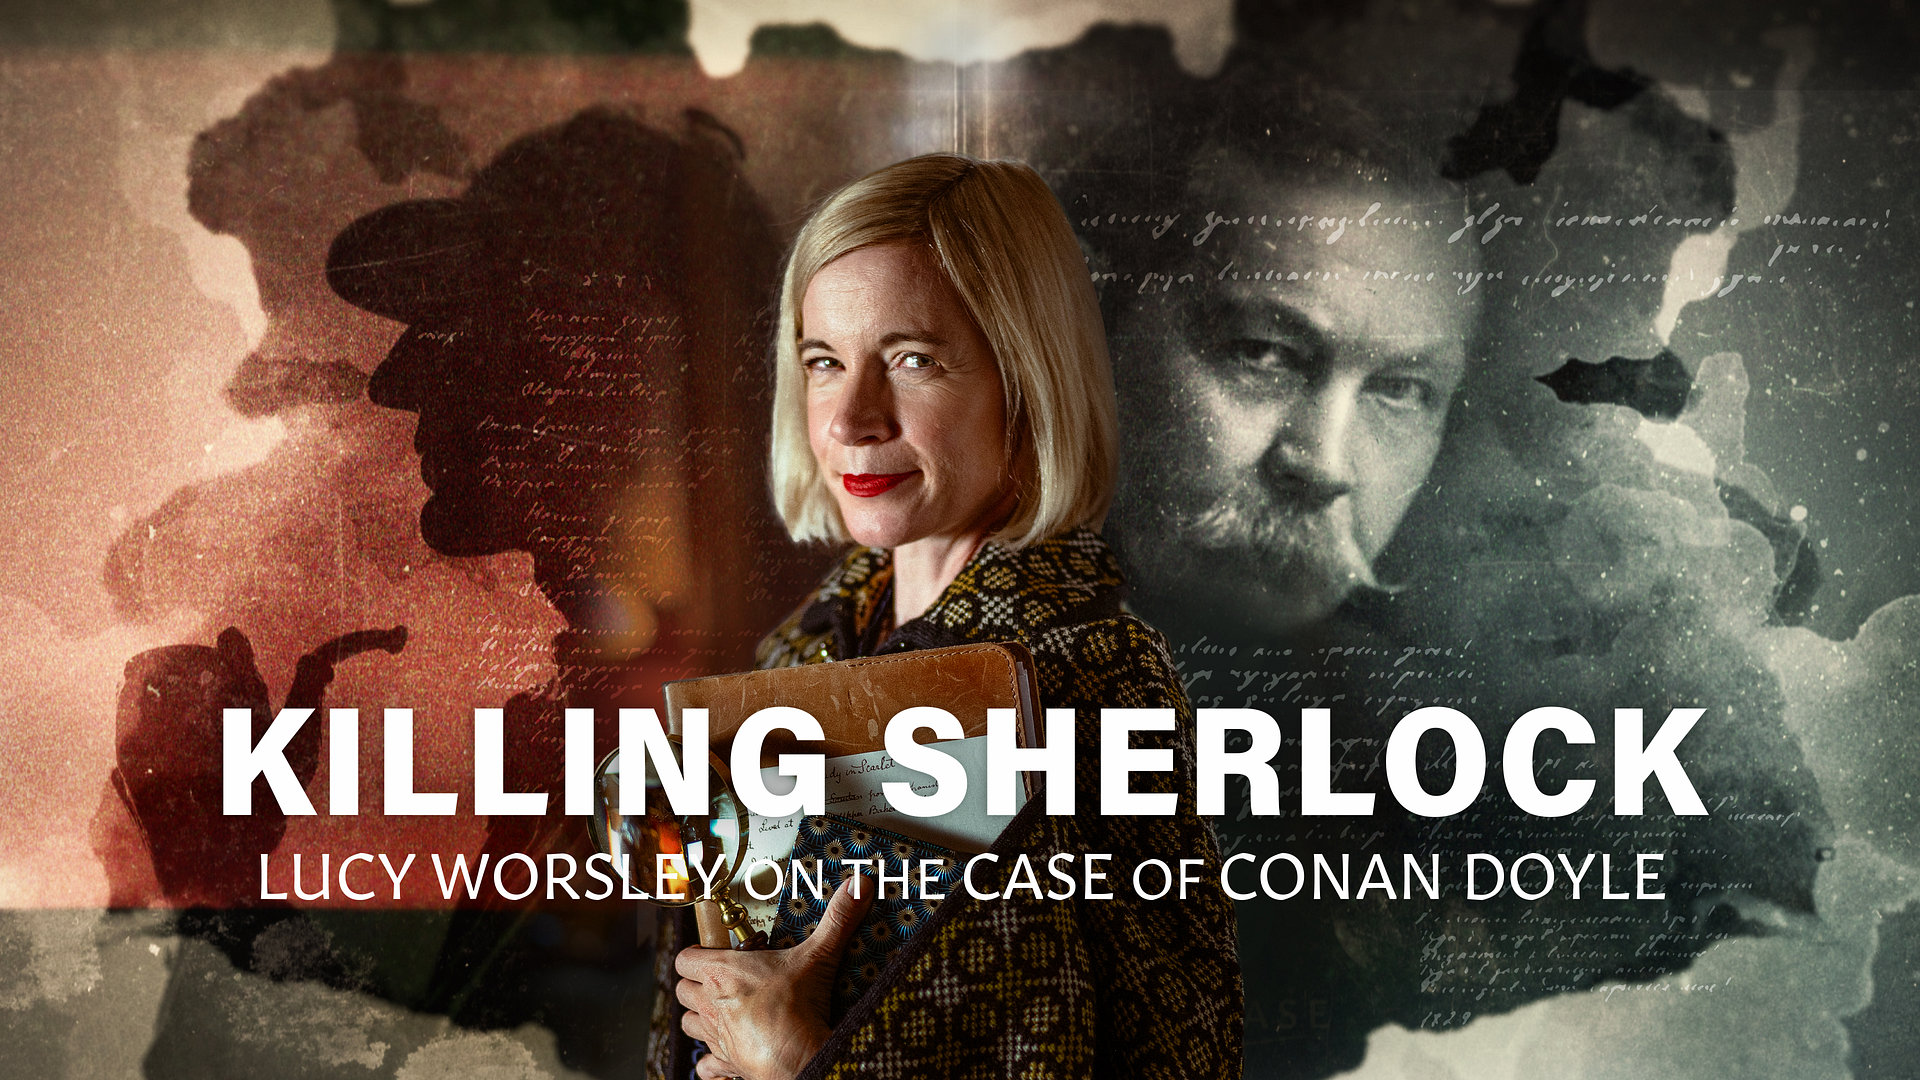 Drapet på Sherlock: Lucy Worsley og saken om sir Arthur Conan Doyle